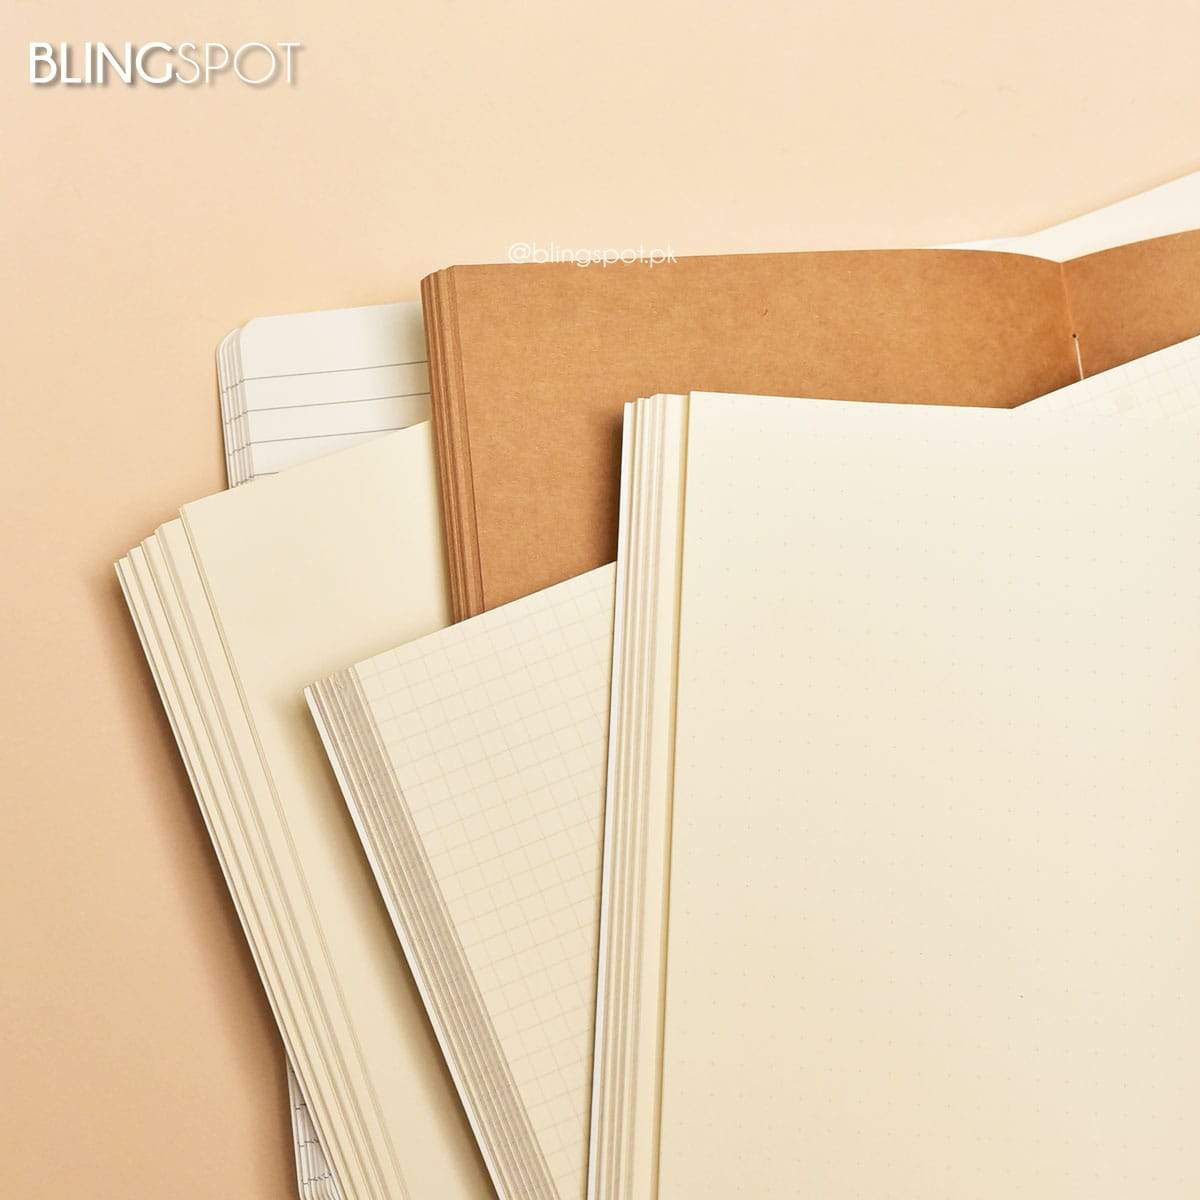 BLINGSPOT Kraft Series - Journal